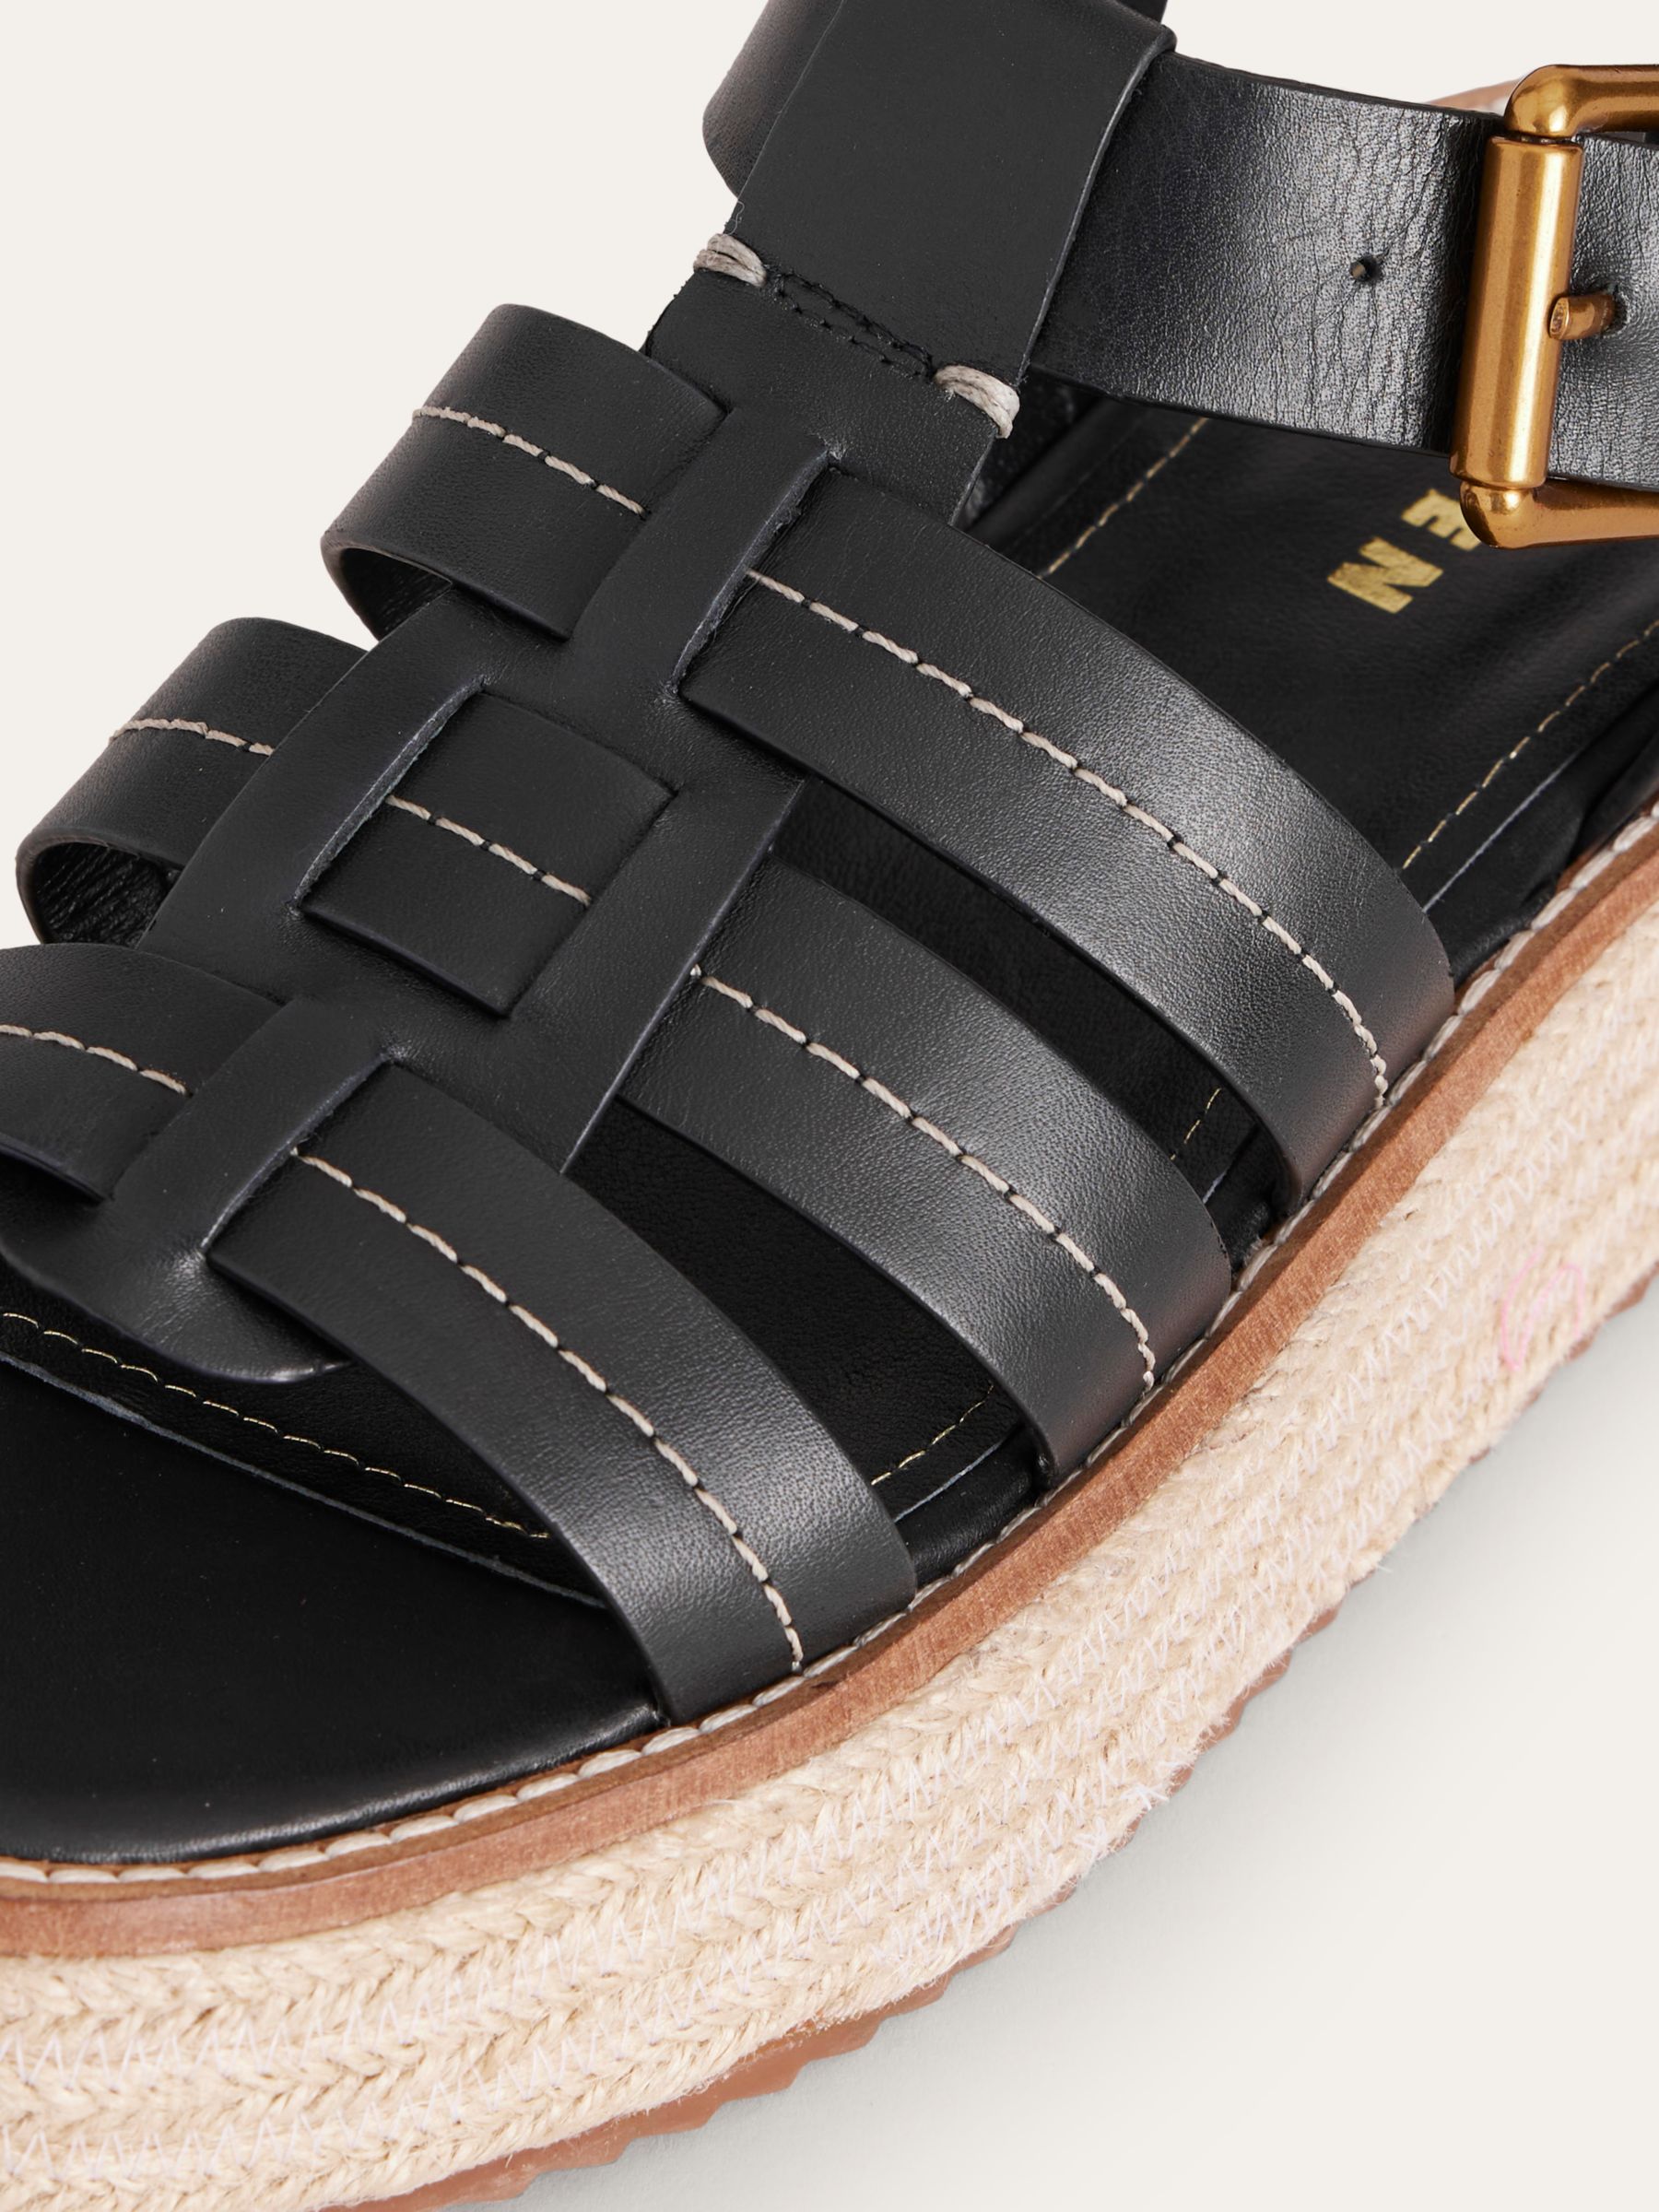 Boden Leather Flatform Sandals, Black, 4